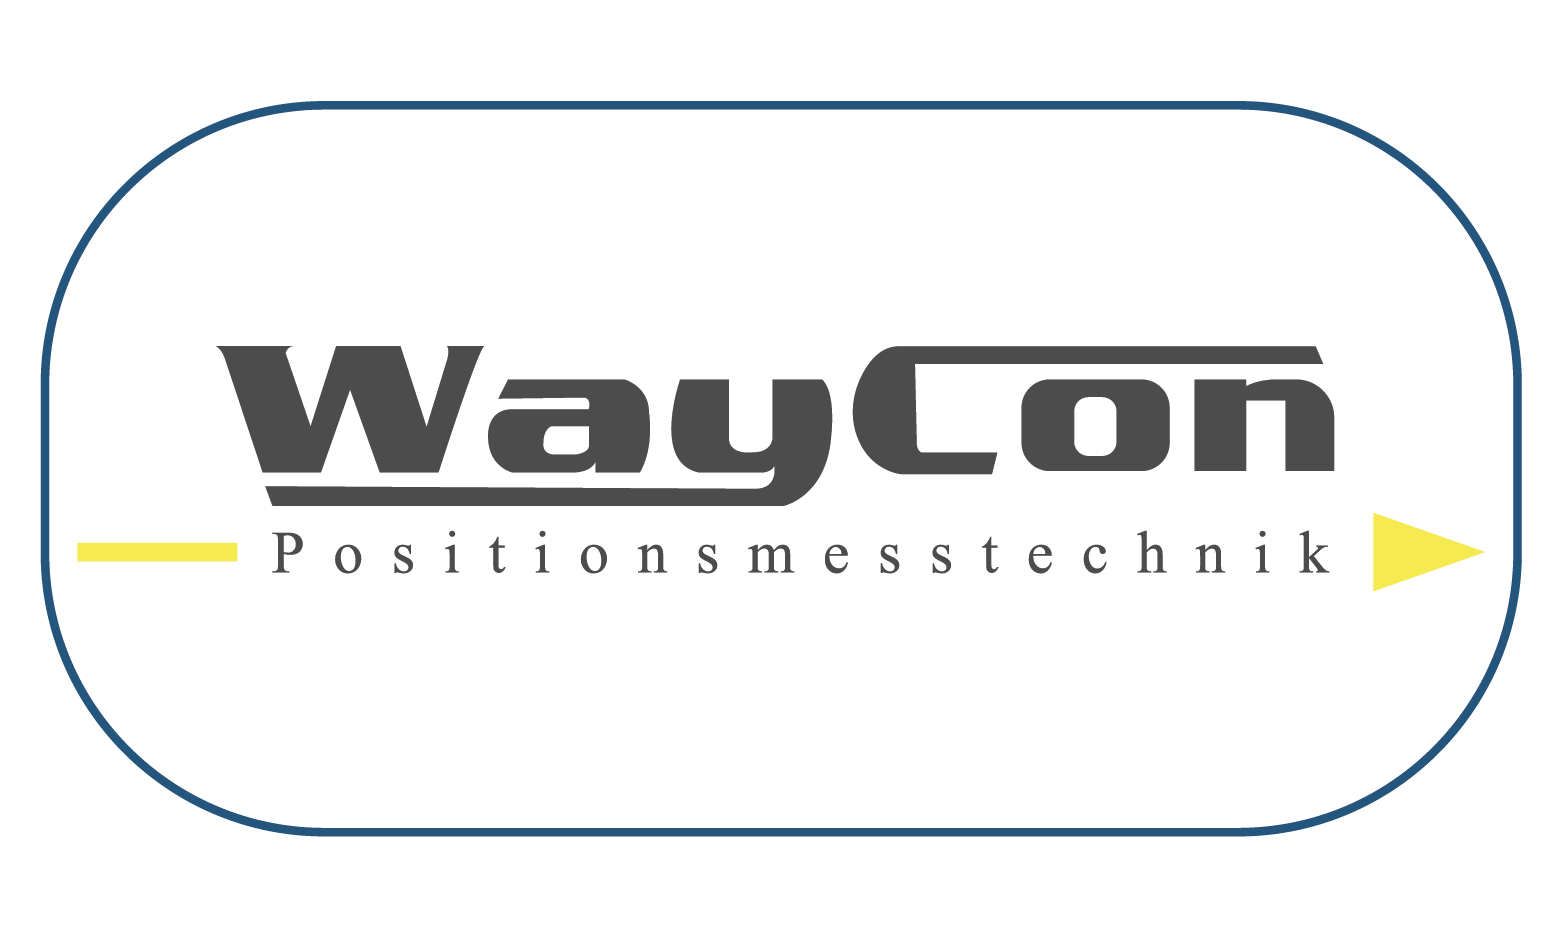 WayCon sensores compactos son rápidos y fáciles de montar